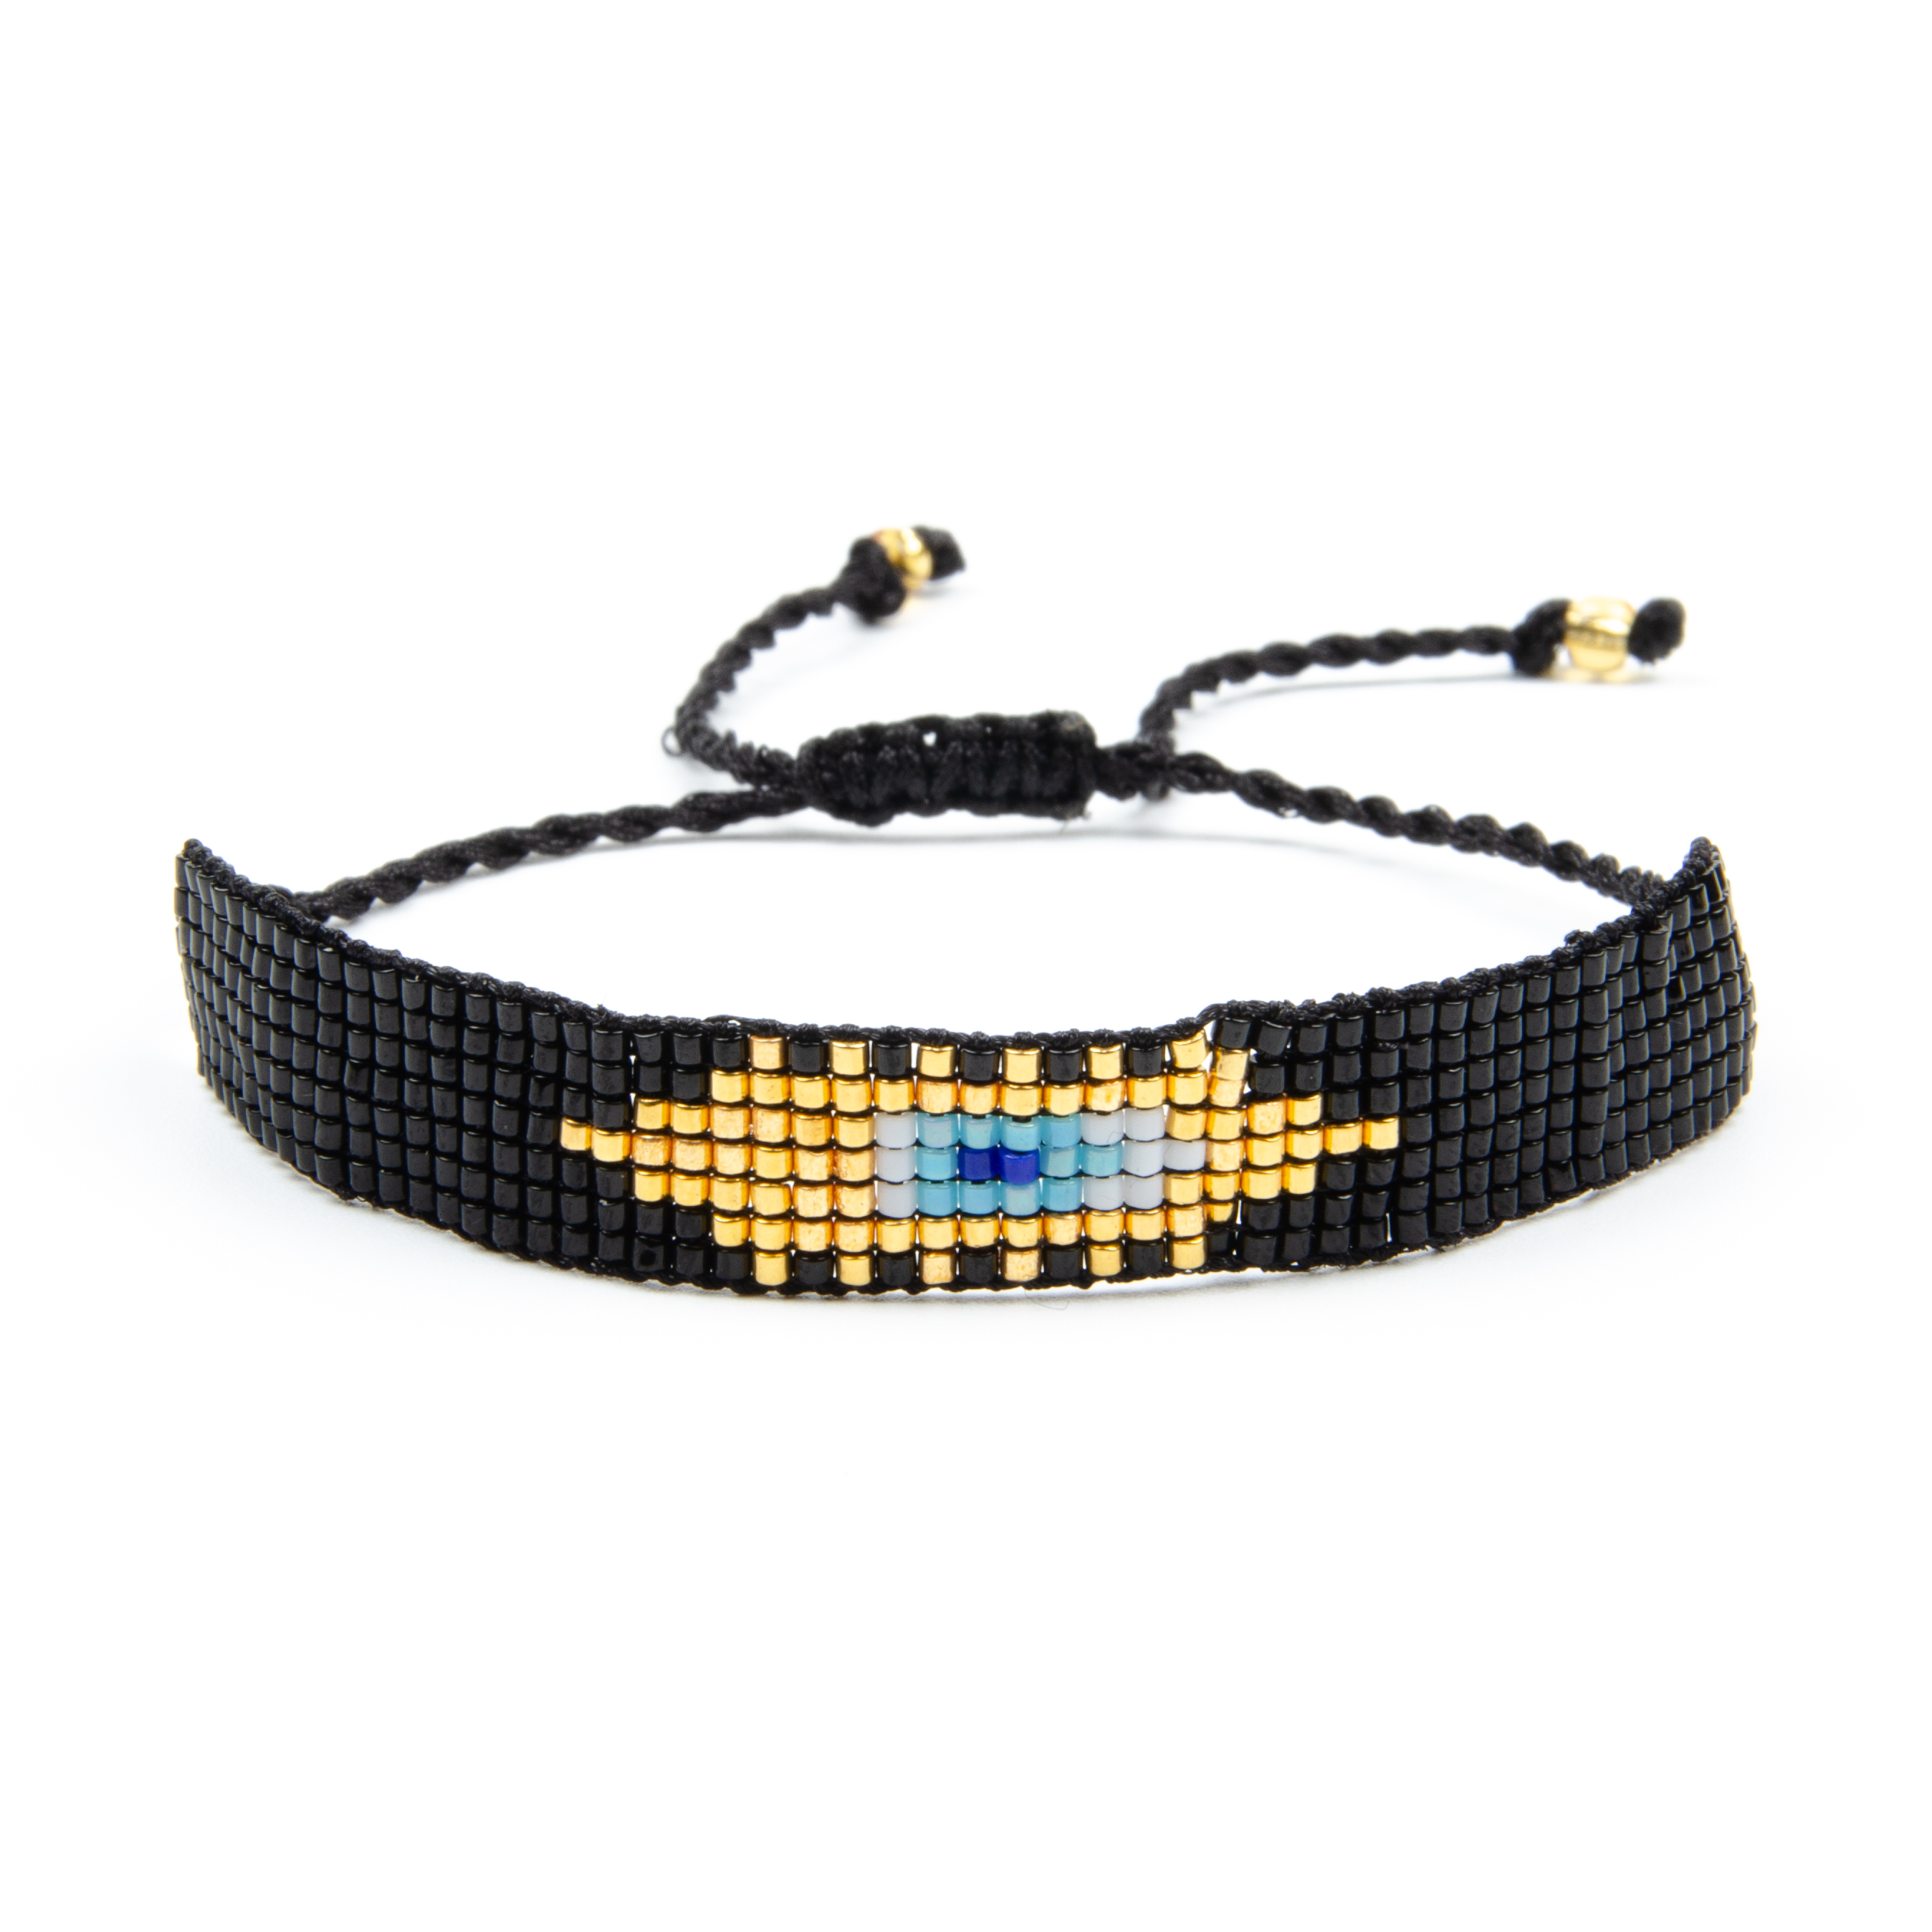 MI-S180077 Moyamiya Wholesale adjustable China jewelry beads bracelet miyuki seed boho chic bracelet